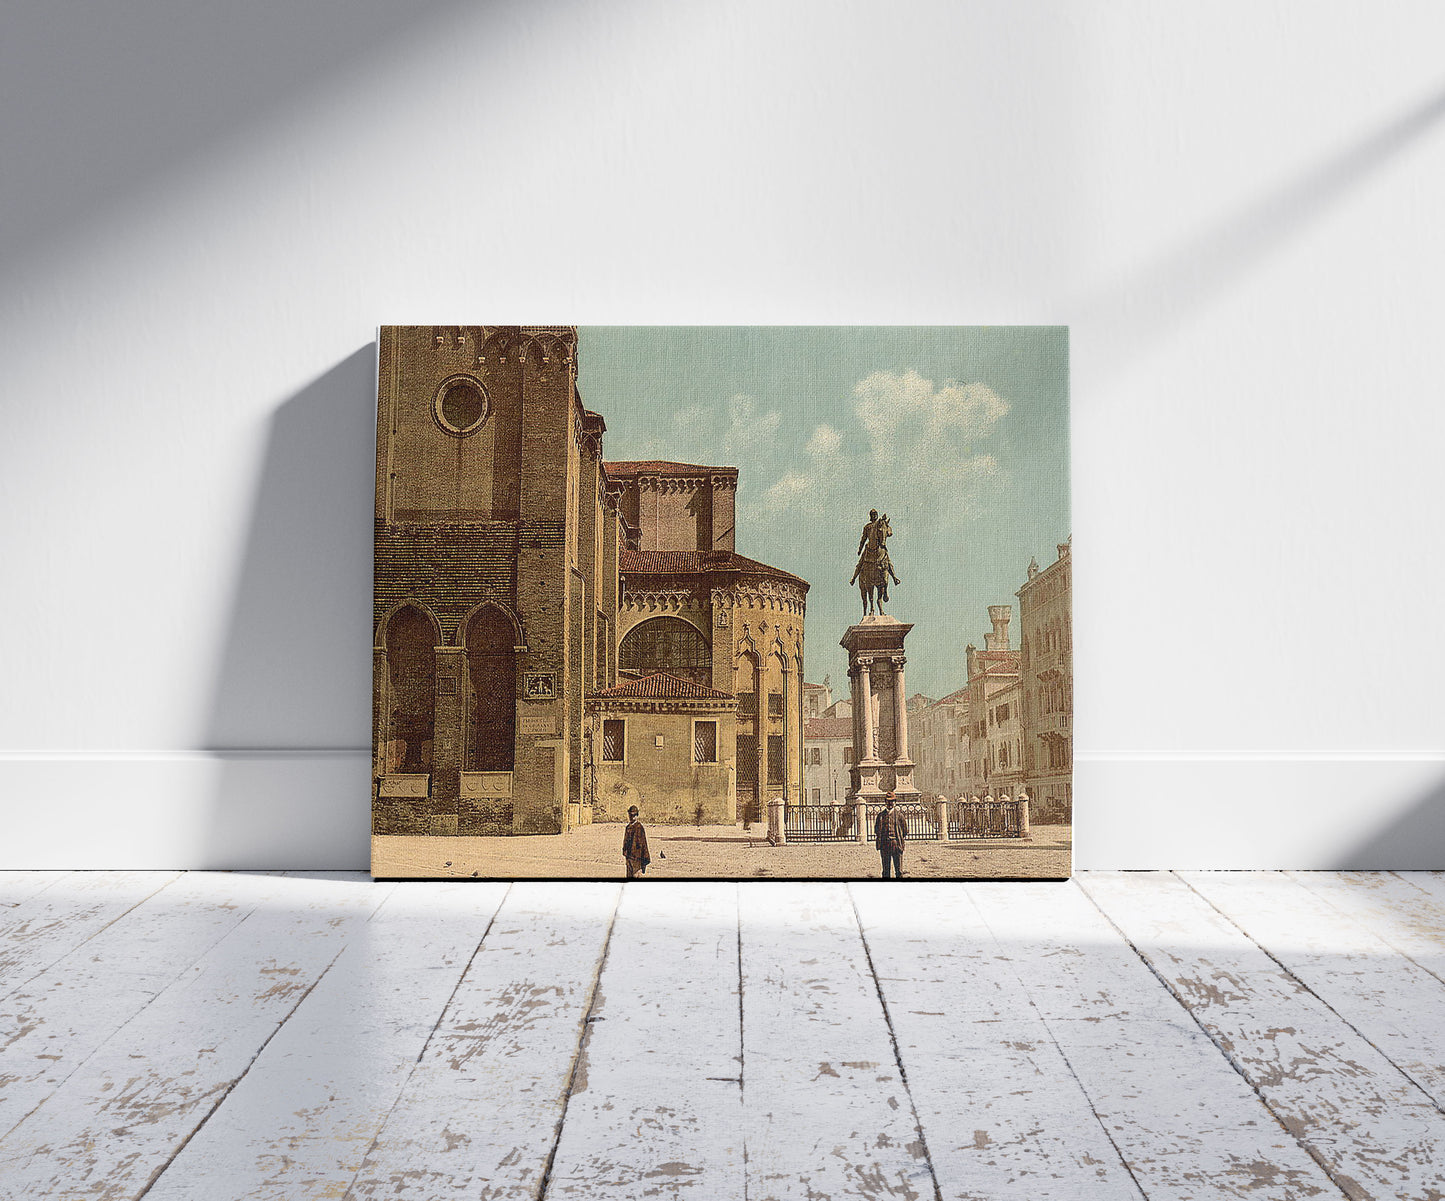 A picture of Santi Giovanni e Páolo church and statue of Bartolomeo Colleoni, Venice, Italy